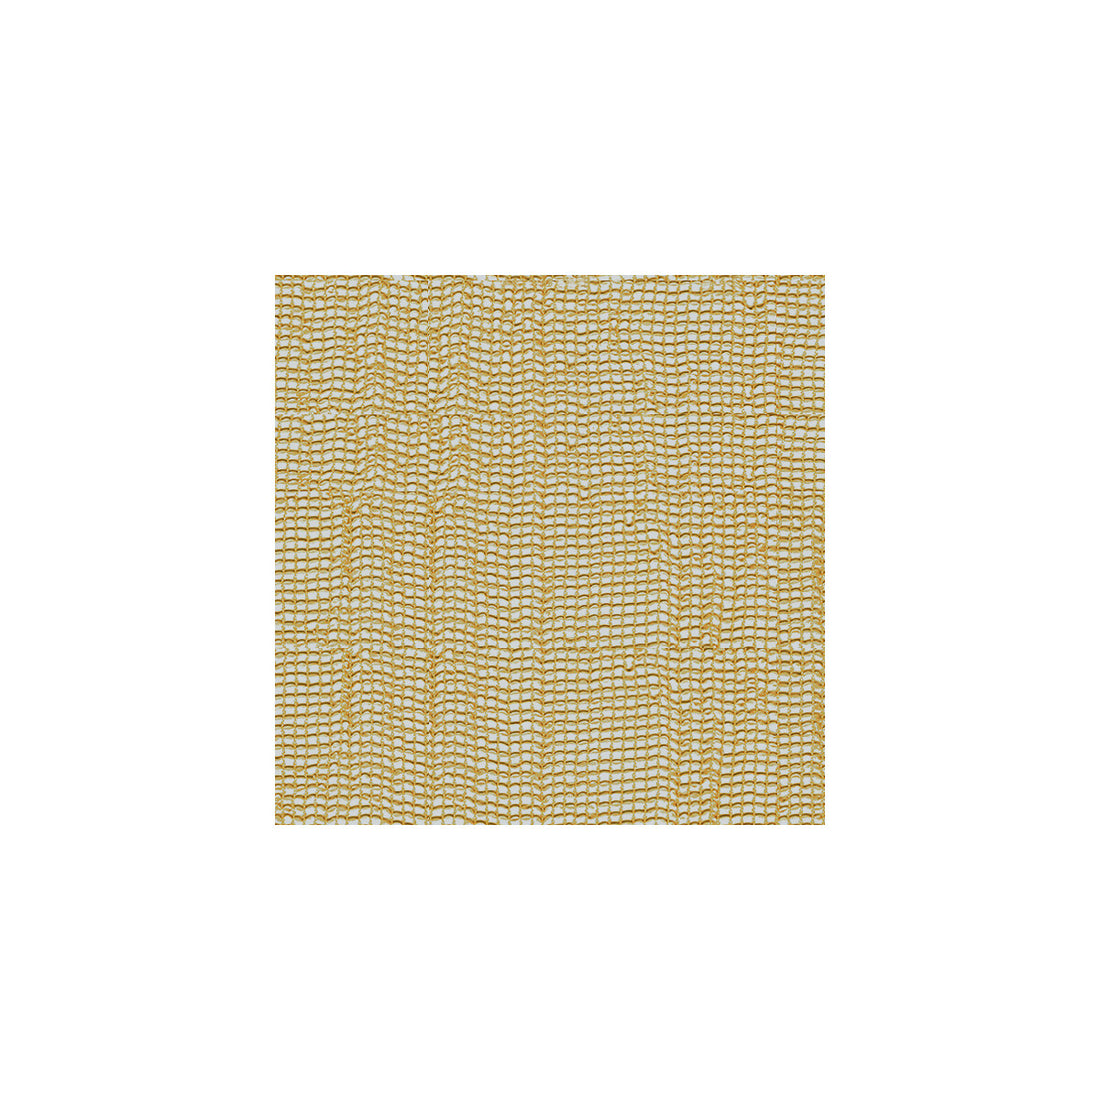 Kravet Basics fabric in 3764-4 color - pattern 3764.4.0 - by Kravet Basics